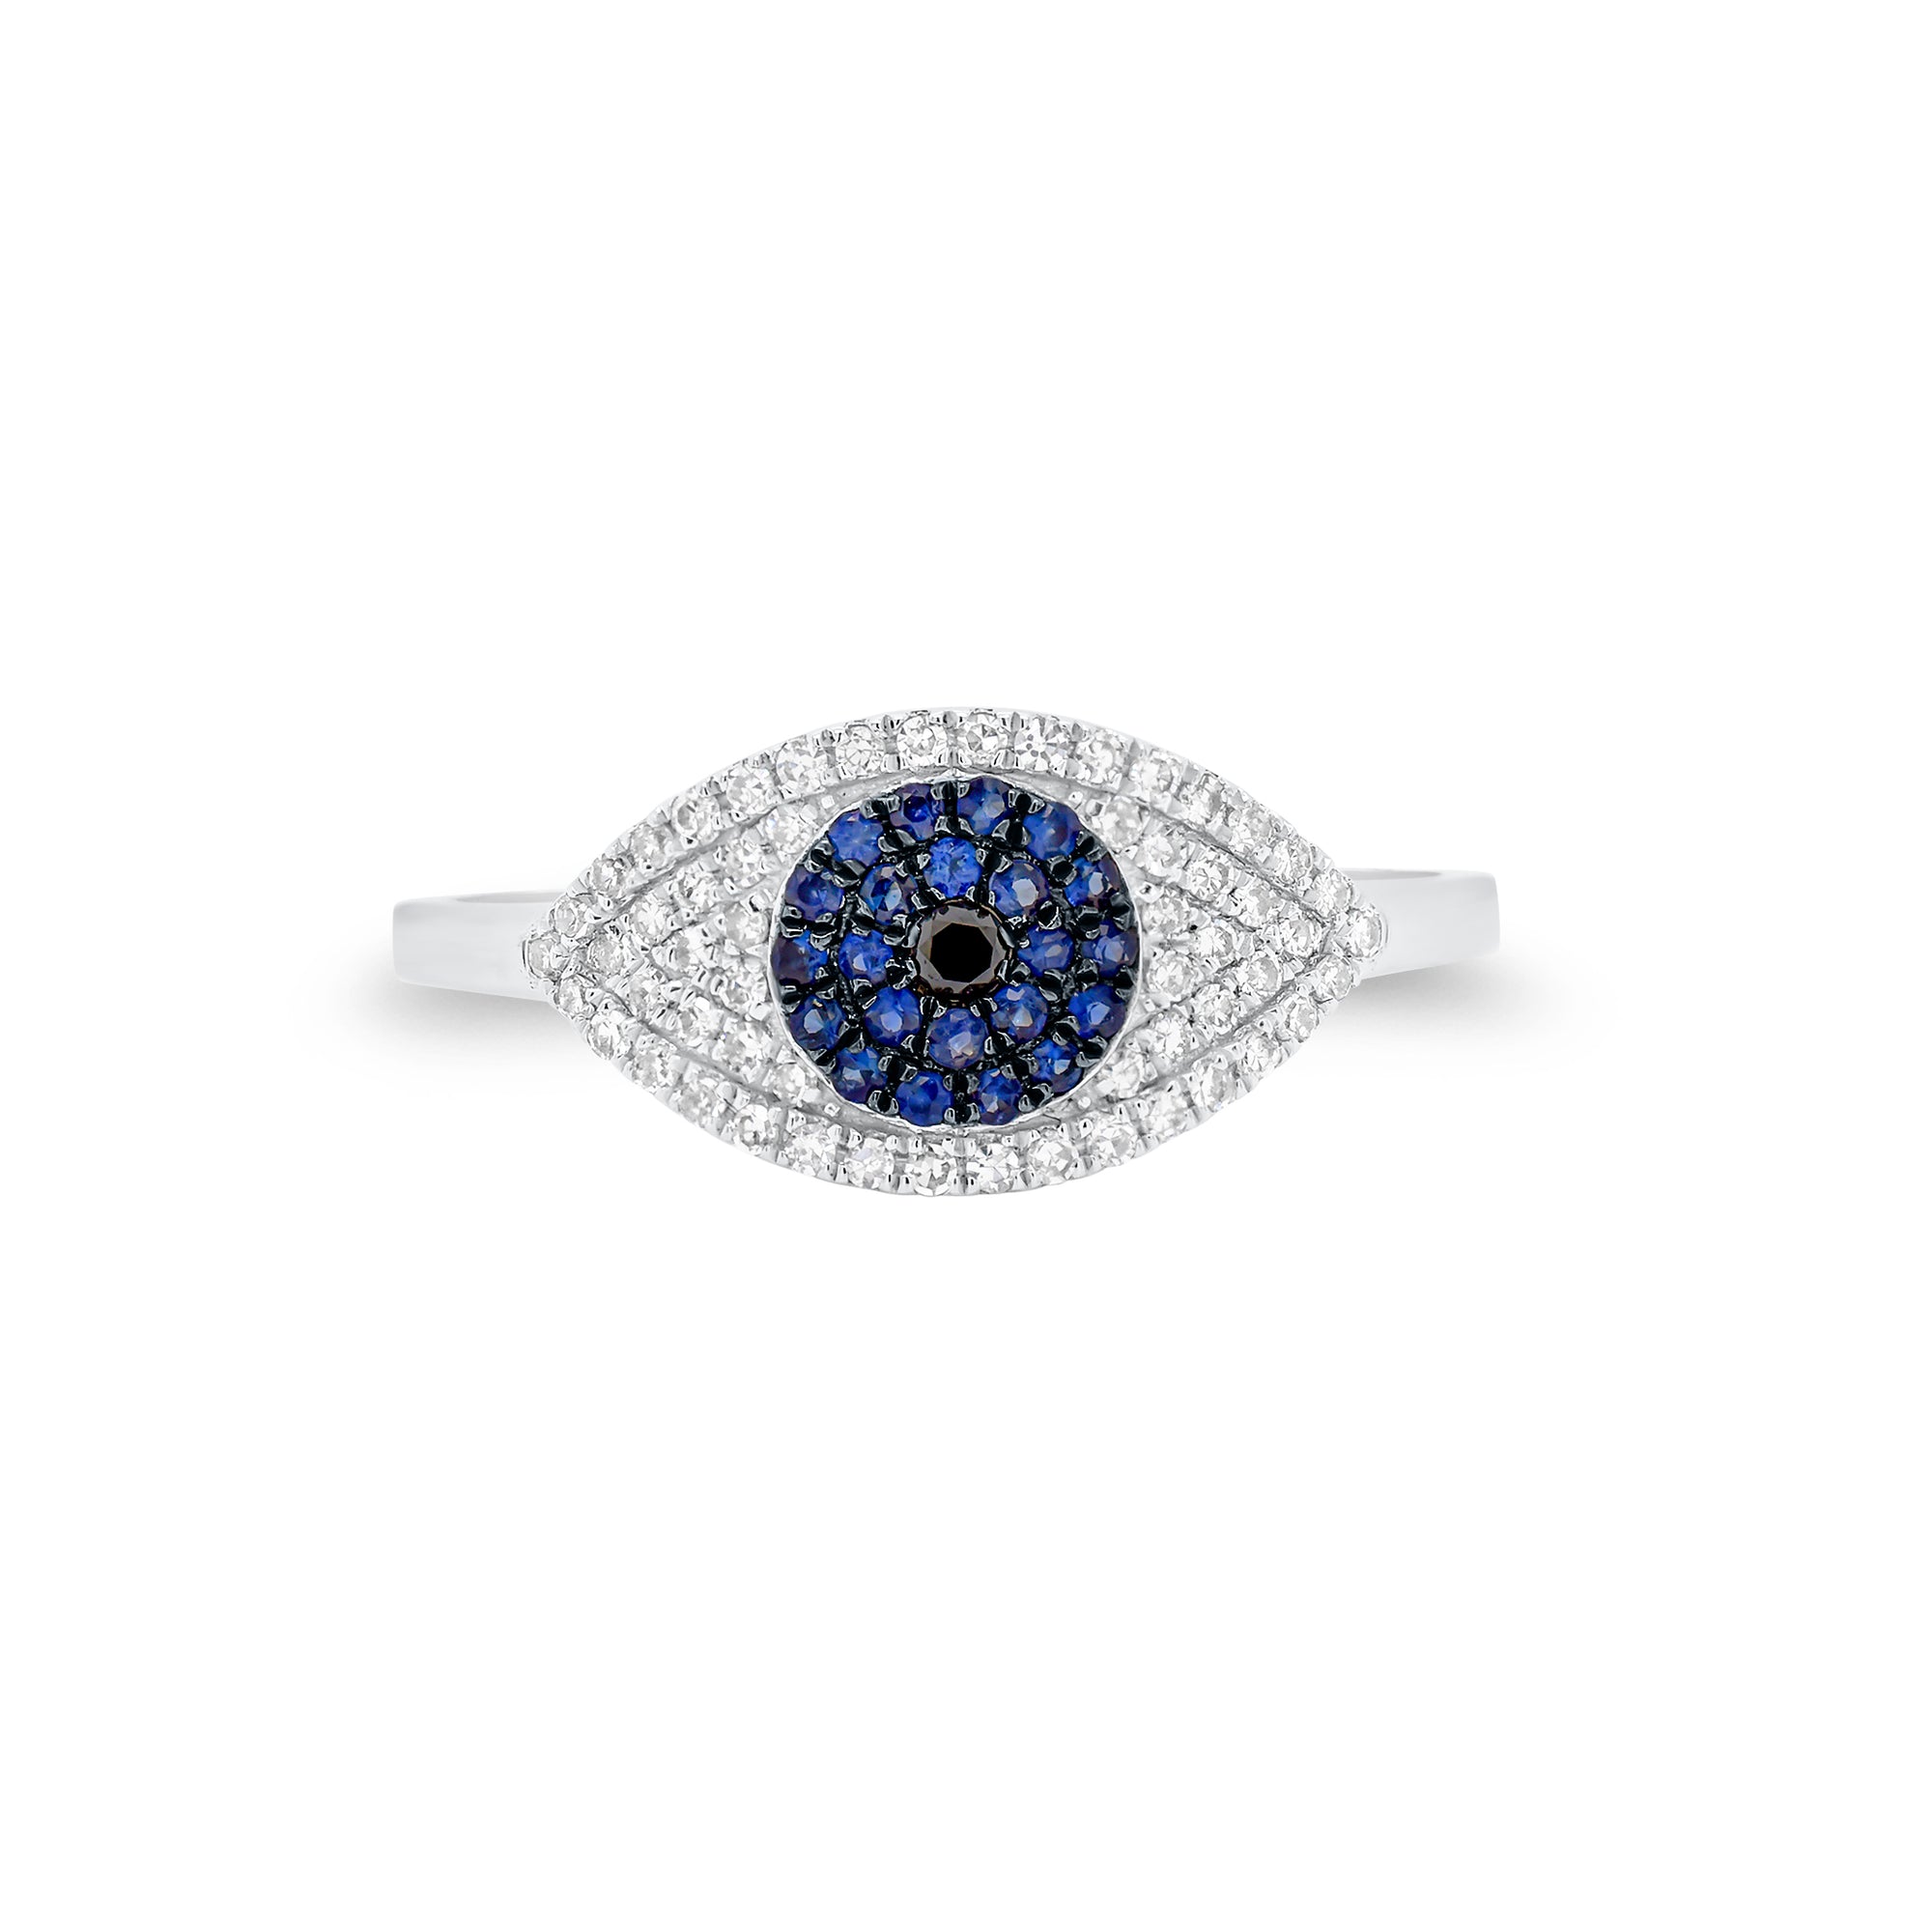 Diamond & Sapphire Evil Eye Ring - 14K white gold weighing 1.75 grams  - 0.02 ct black diamond  - 22 sapphires weighing 0.11 carats  - 58 round diamonds weighing 0.16 carats